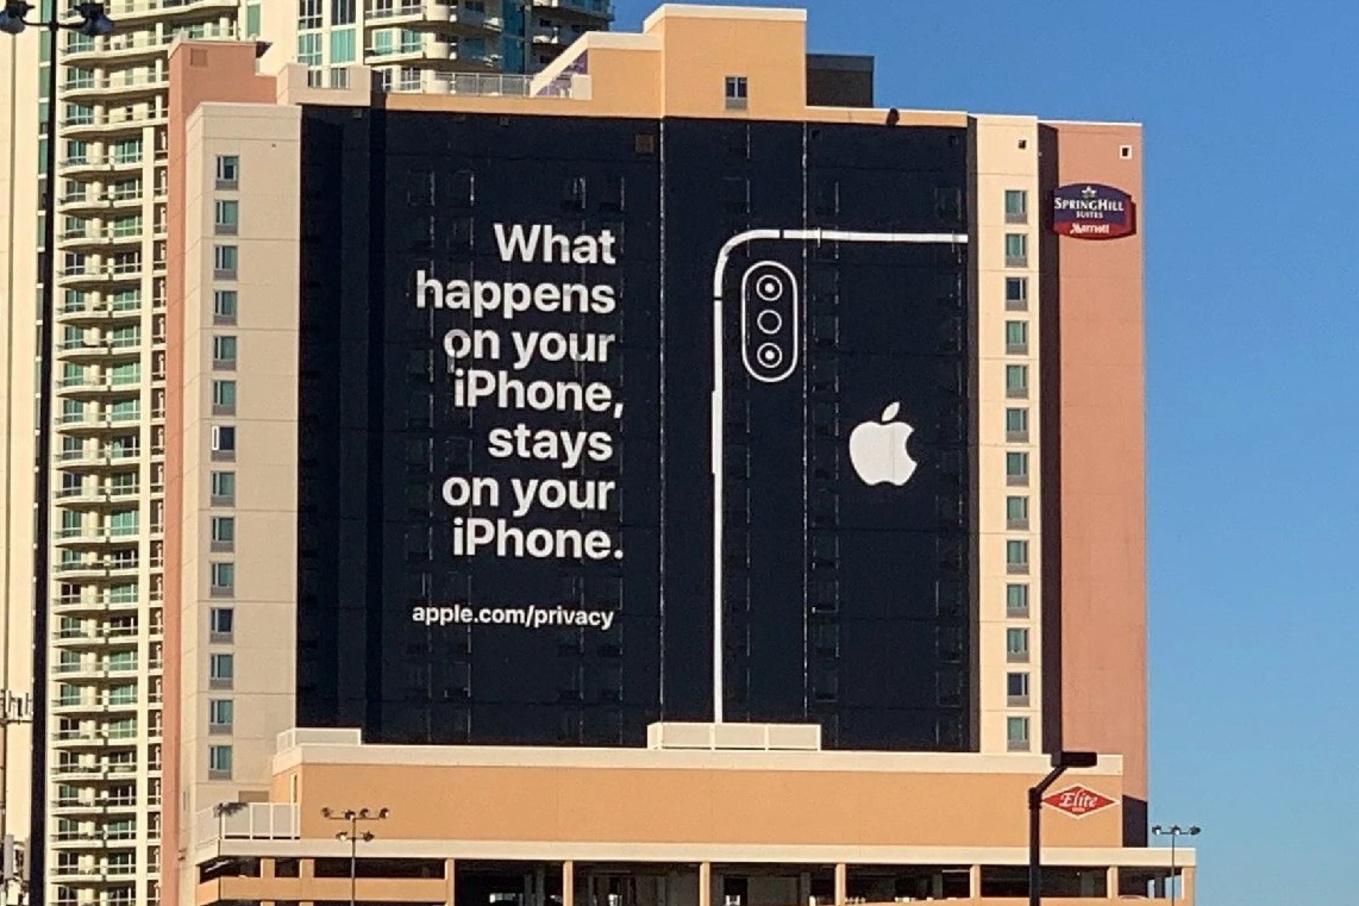 Een advertentie waar Apple in 2019 mee uitpakte op de CES-technologiebeurs.